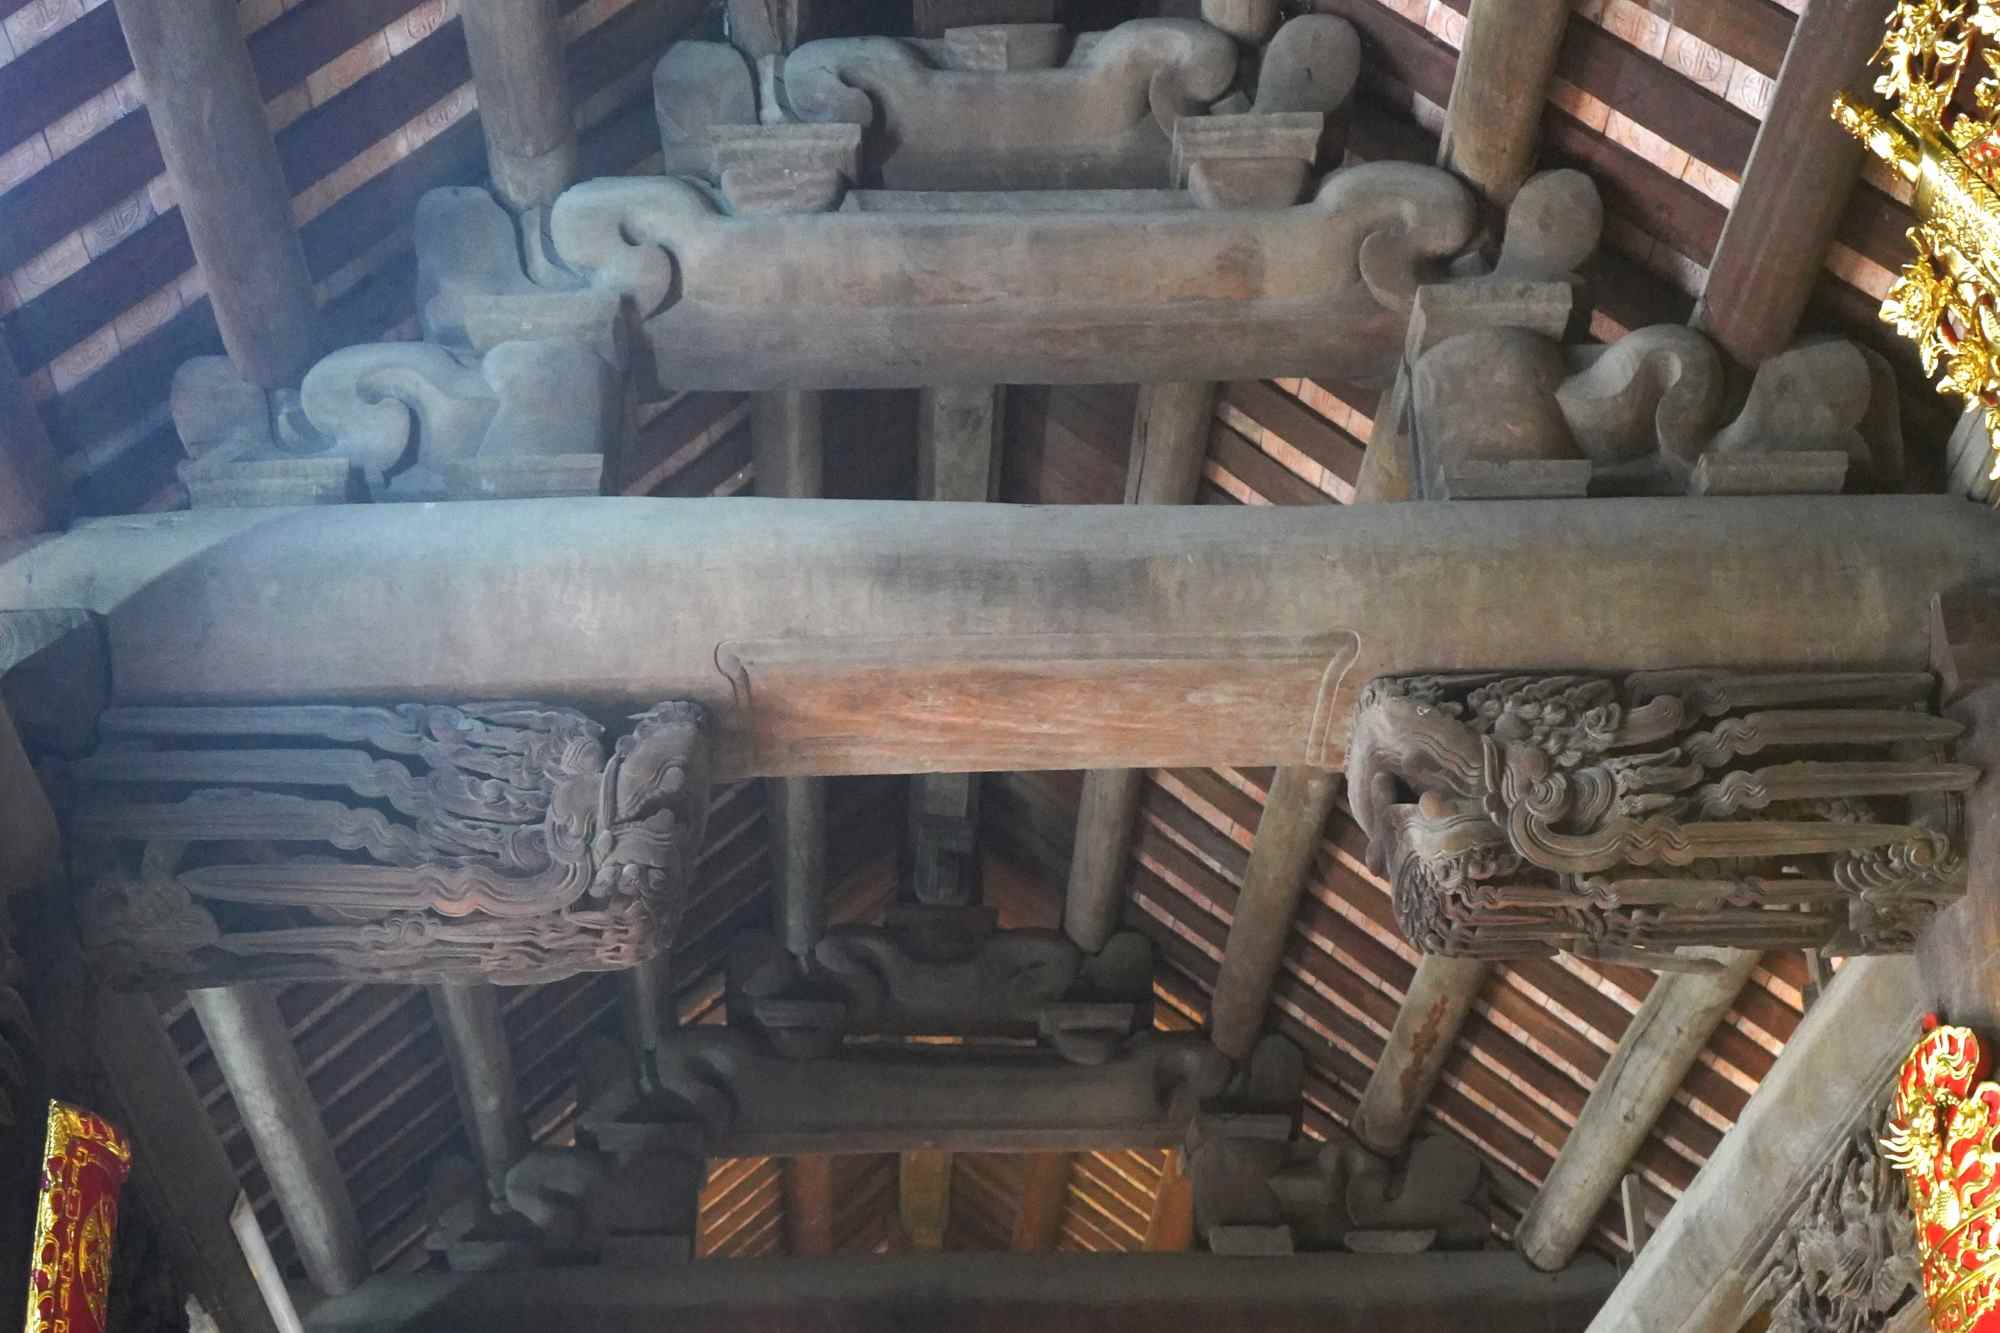 Trải qua hơn 300 năm thăng trầm lịch sử, đình Hàng Kênh vẫn được bảo lưu gần như nguyên vẹn một công trình kiến trúc gỗ to lớn, bề thế. 